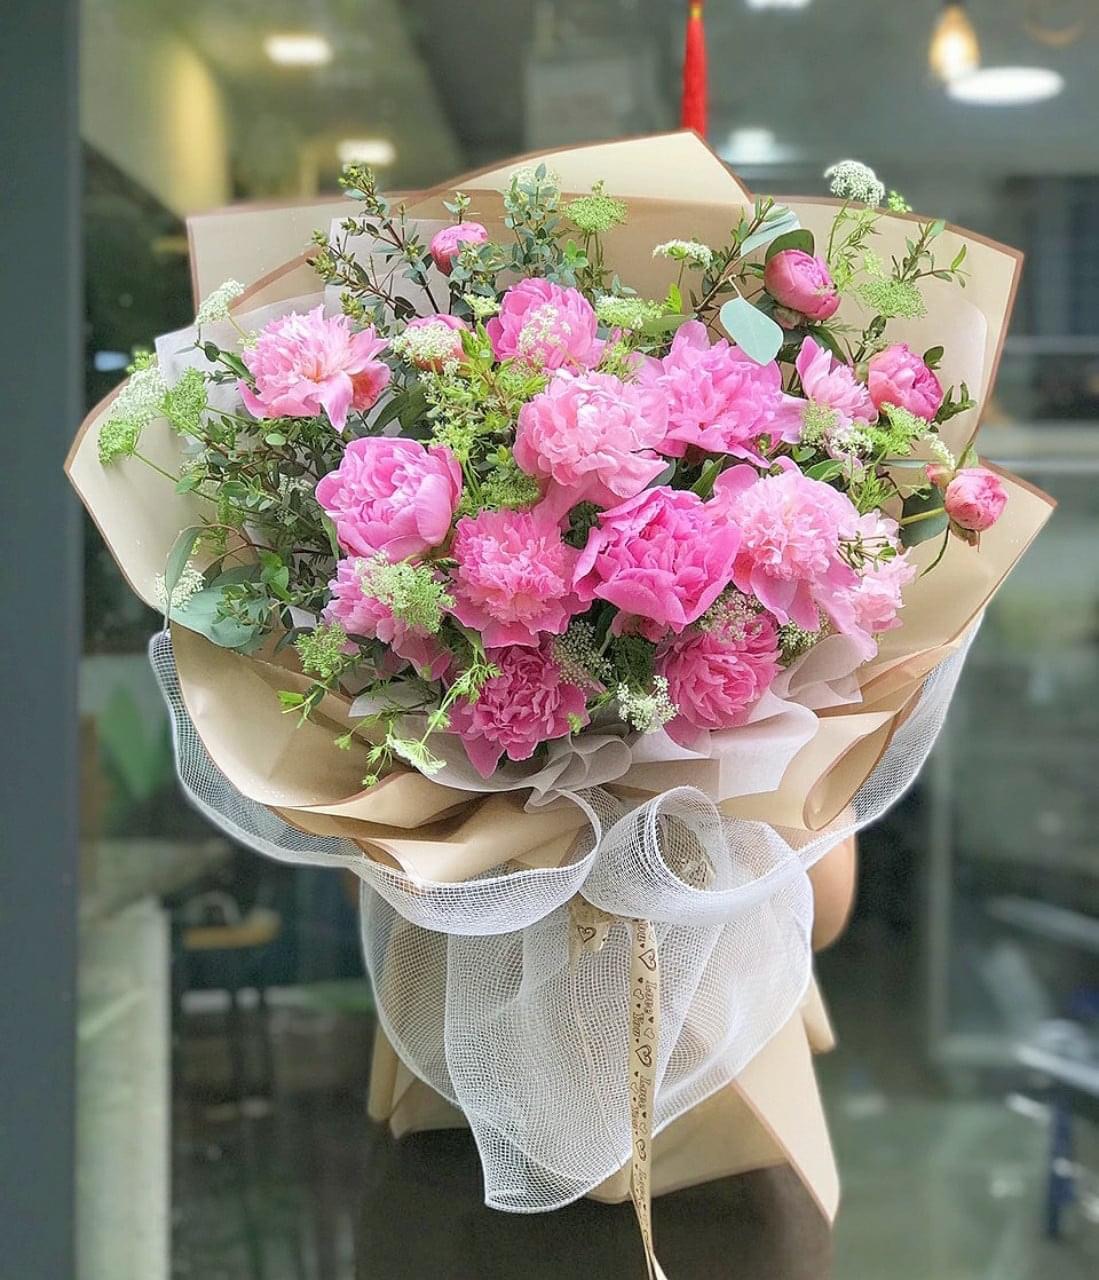 Shop hoa tươi mừng sinh nhật ở Long Khánh ý nghĩa